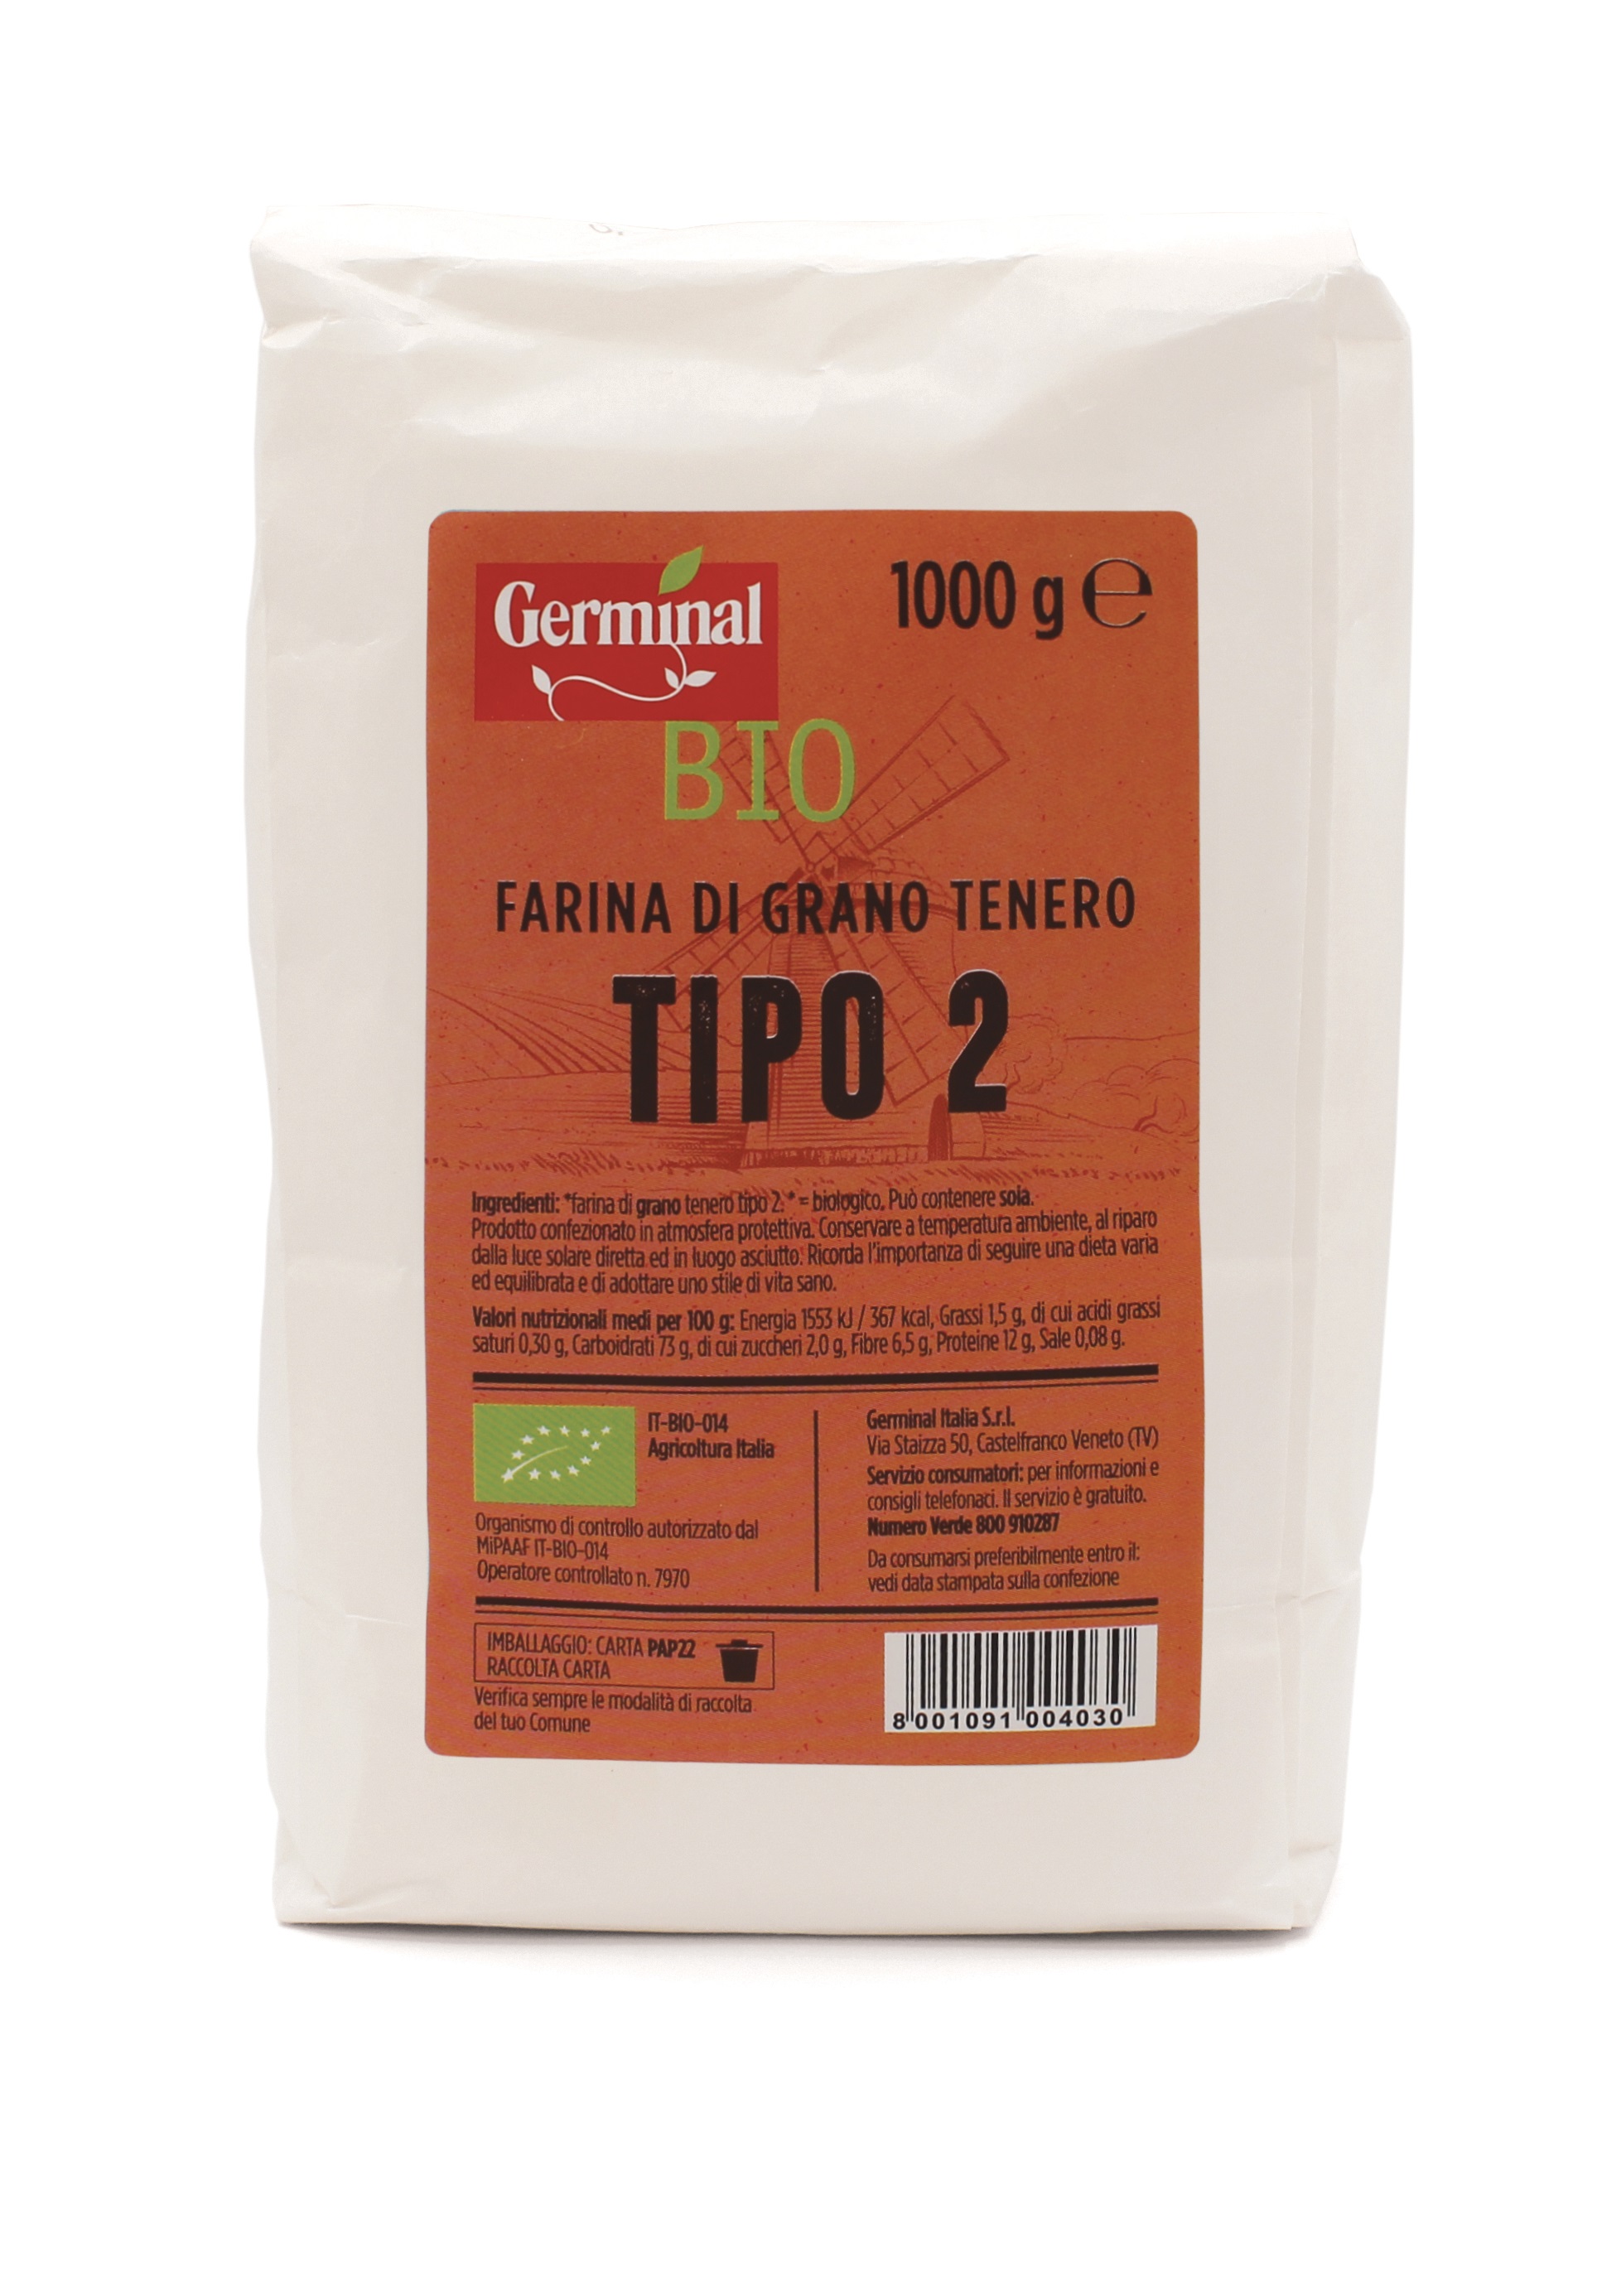 Immagine confezione Farina di Grano Tenero di Tipo 2 Germinal Bio